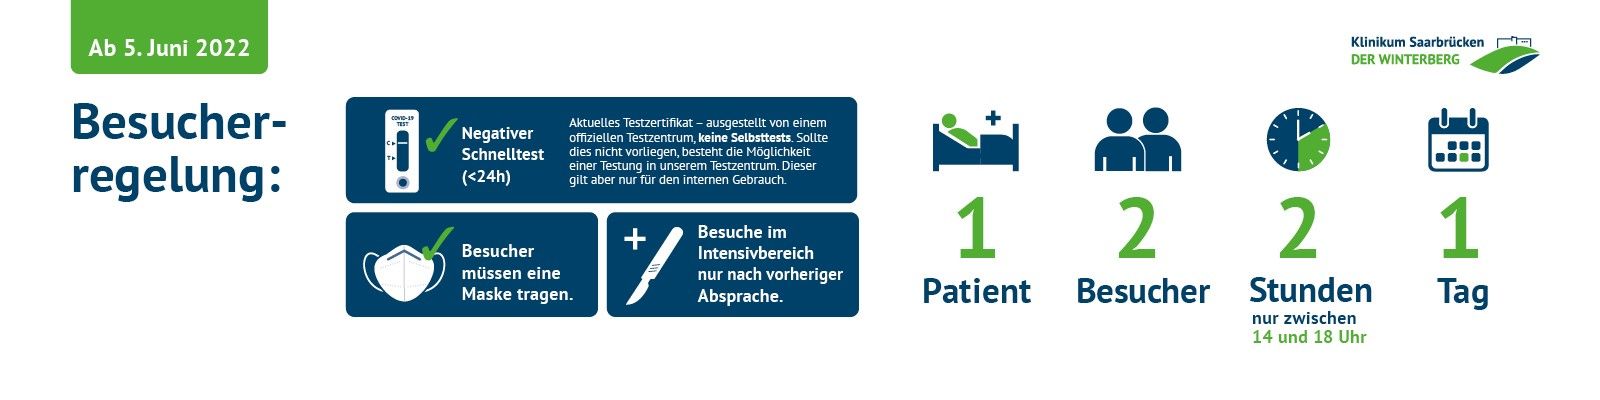 Besucherregelung im Klinikum Saarbrücken ab 5. Juni 2022: 1 Patient - 2 Besucher - bis zu 2 Stunden zwischen 14 und 18 Uhr - an einem Tag - mit negativem Schnelltest und Maske 20220607_Besucher_Slider_Lockerung_Juni22.jpg